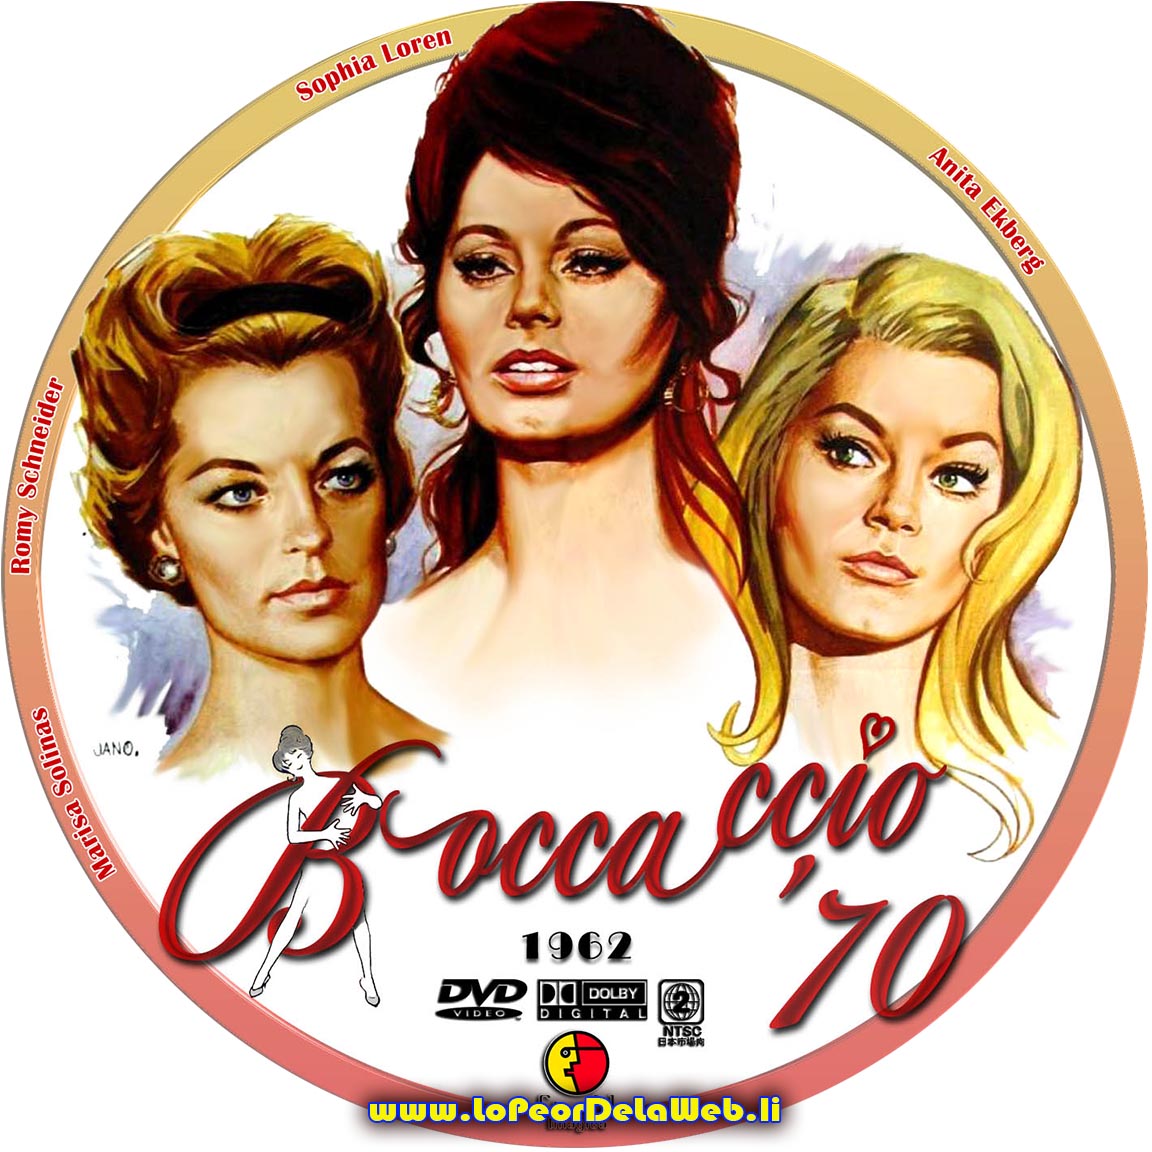 Boccaccio '70 (1962 - Sophia Loren)